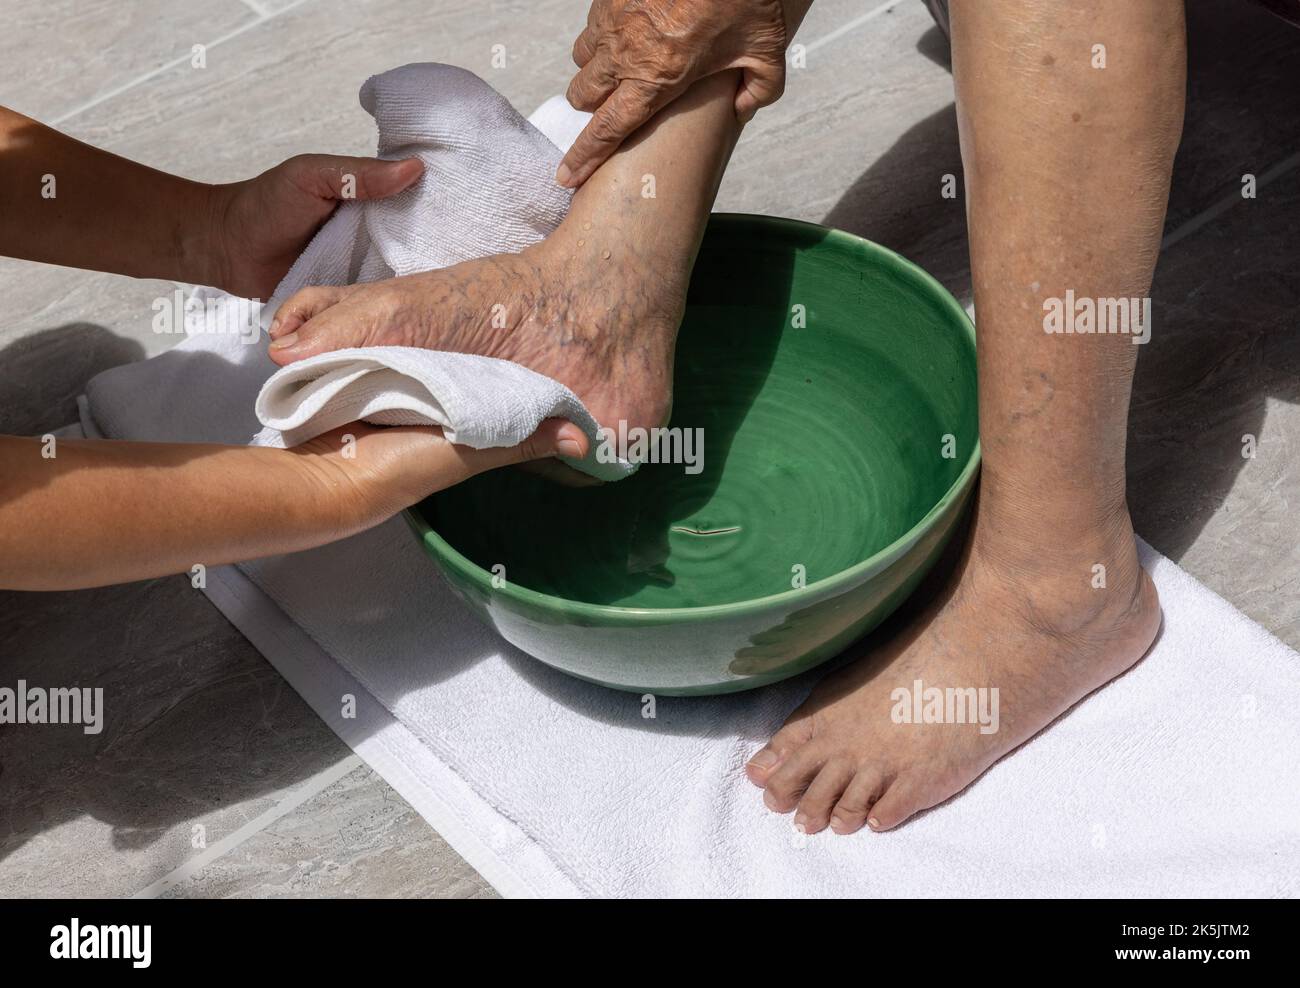 Le personnel soignant féminin essuie les pieds de la femme âgée avec une serviette. Banque D'Images